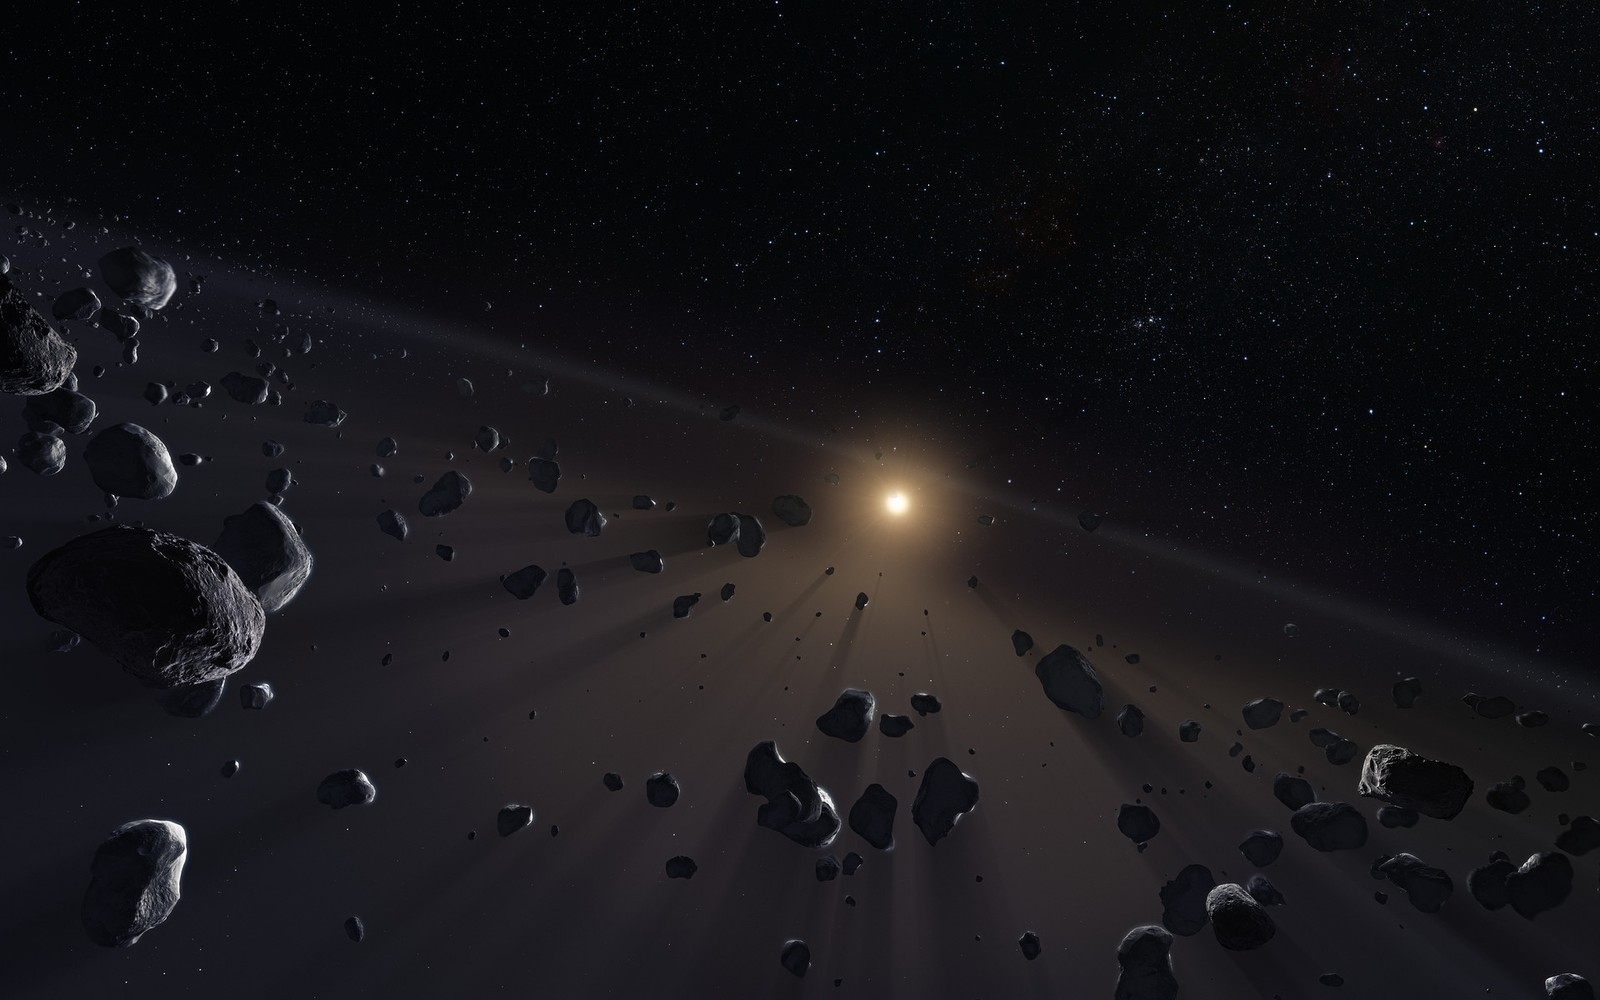 Pas Kuipera zadziwił astronomów. Co znalazła w nim sonda New Horizons?